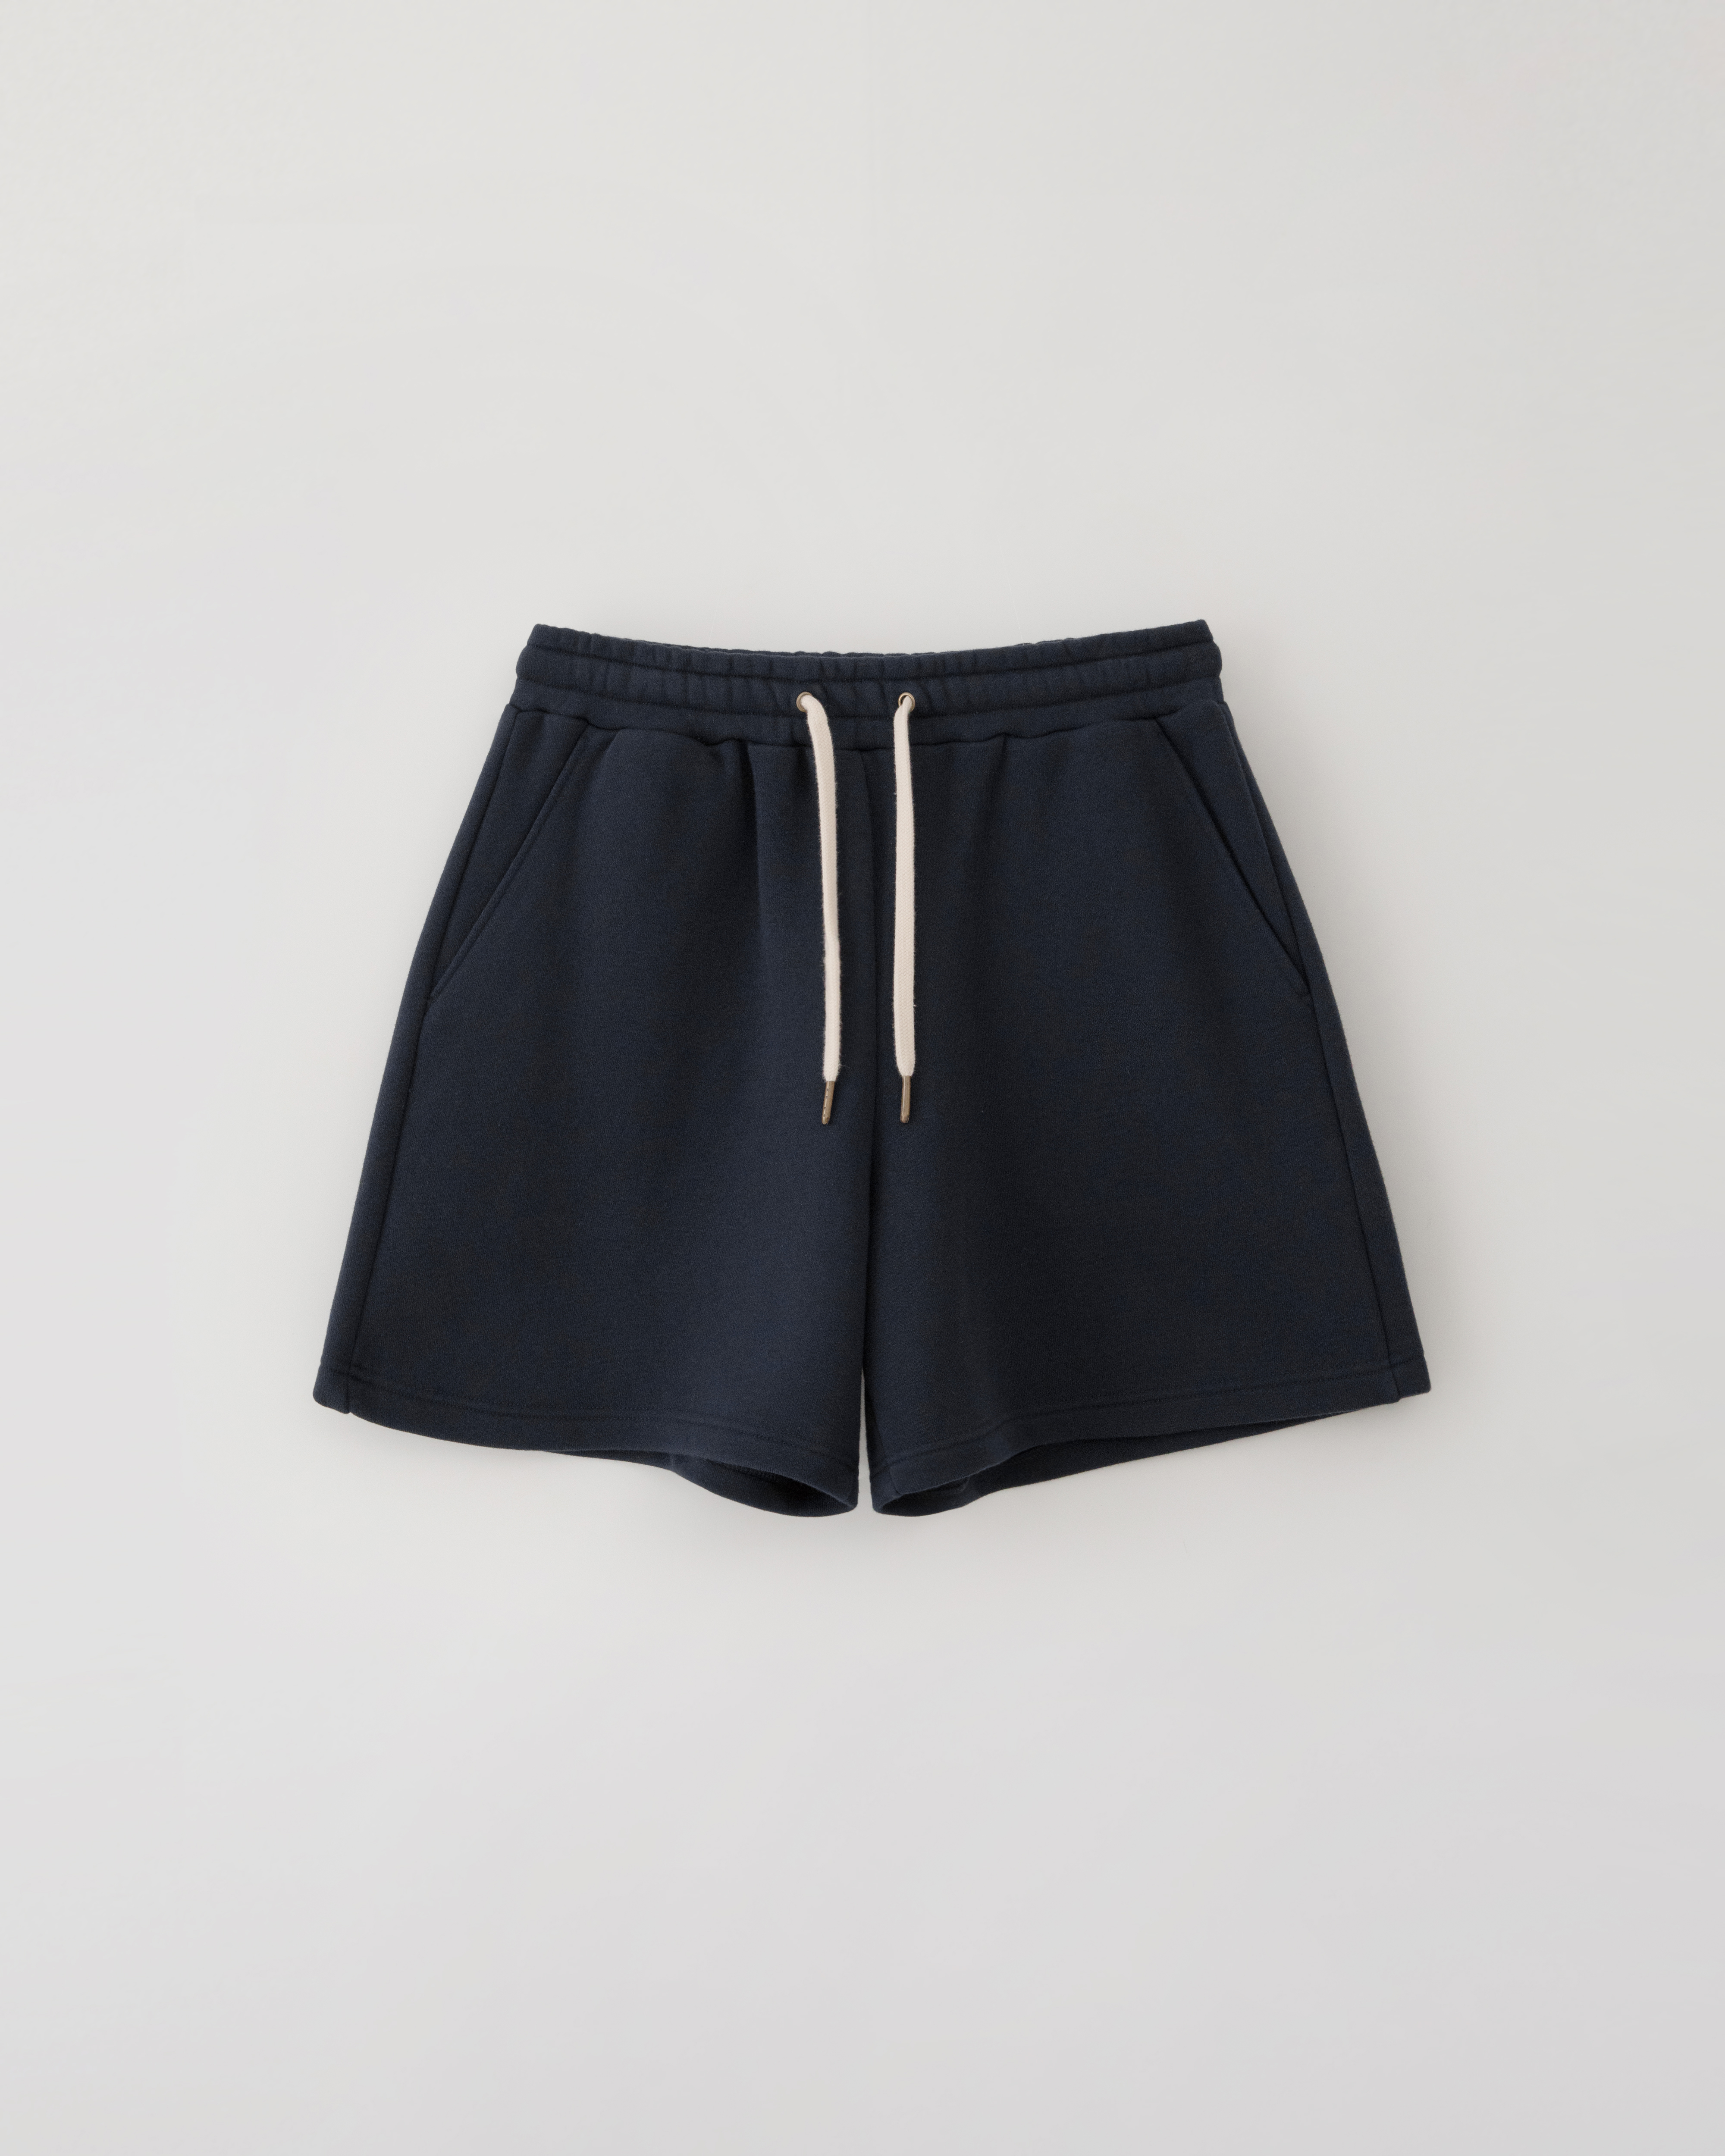 3/29(금) 발매예정 Ivy sweat shorts - deep navy